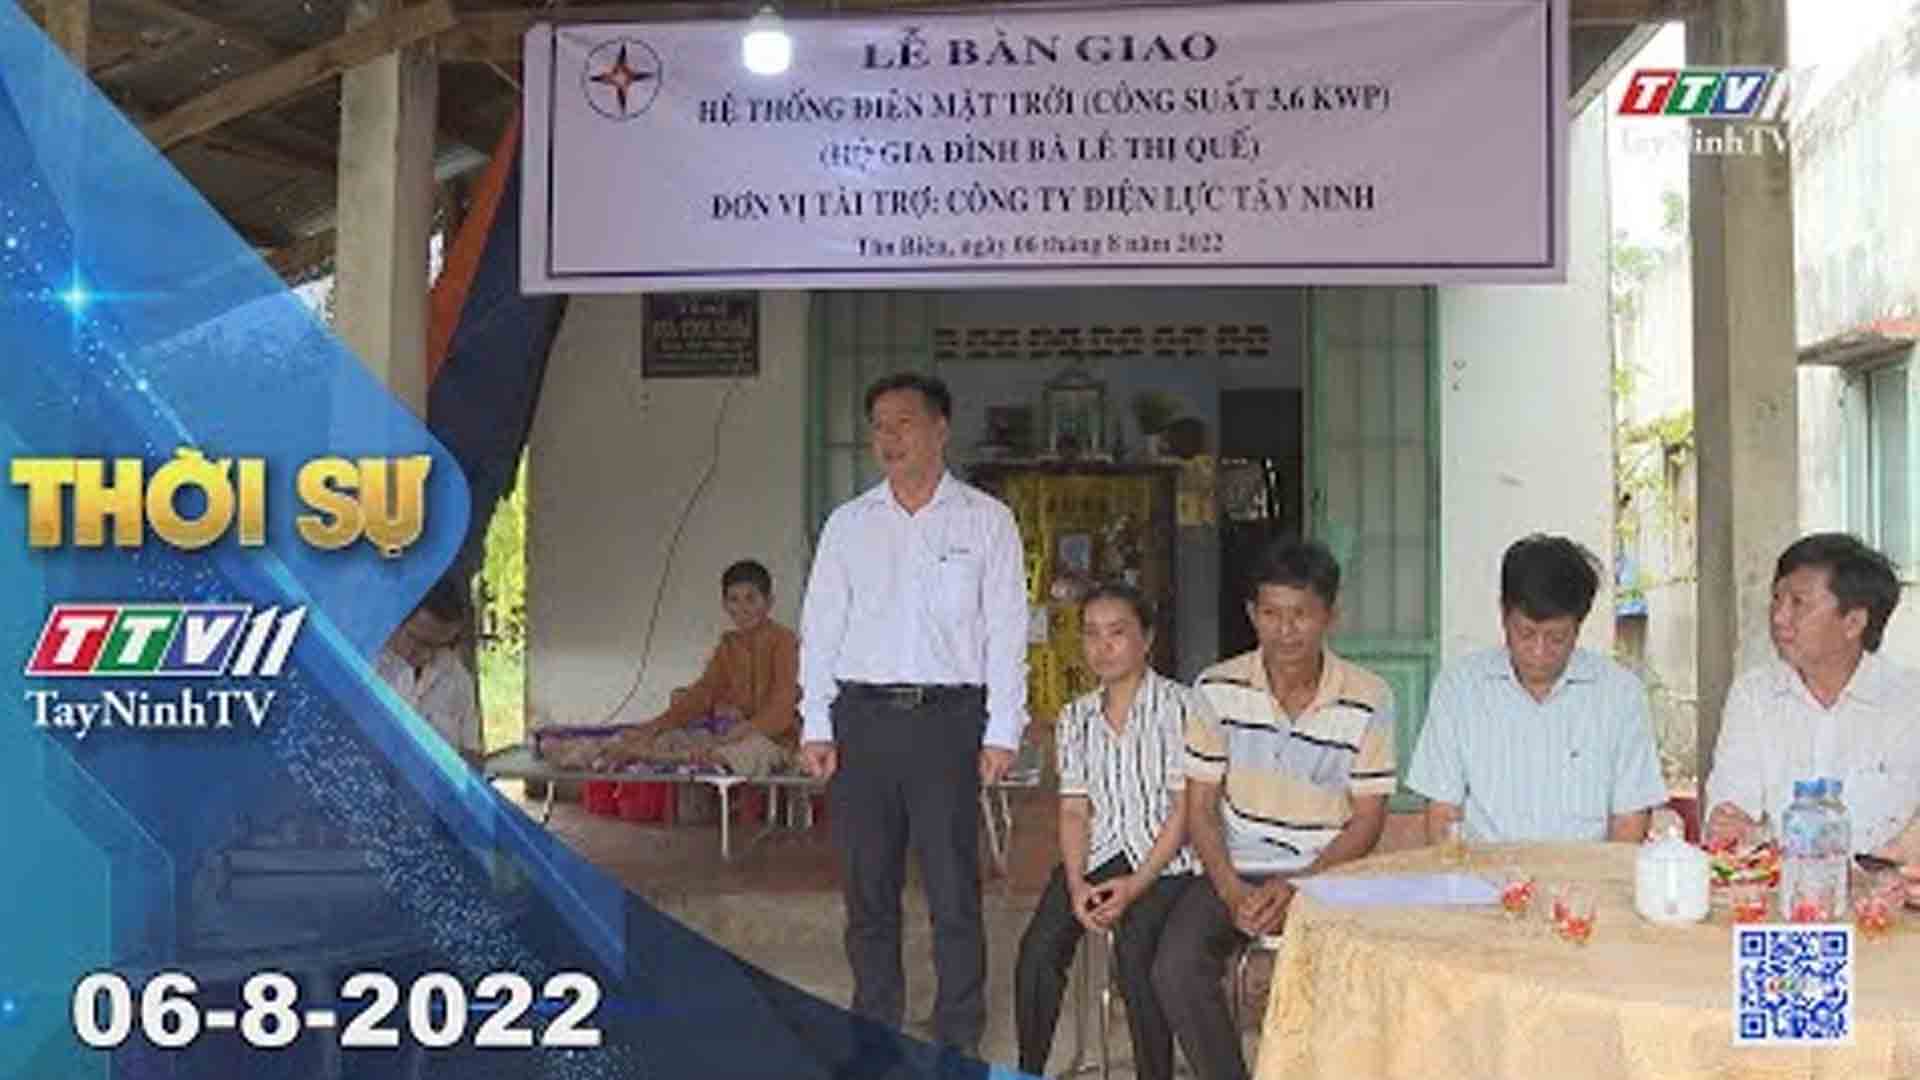 Thời sự Tây Ninh 06-8-2022 | Tin tức hôm nay | TayNinhTV